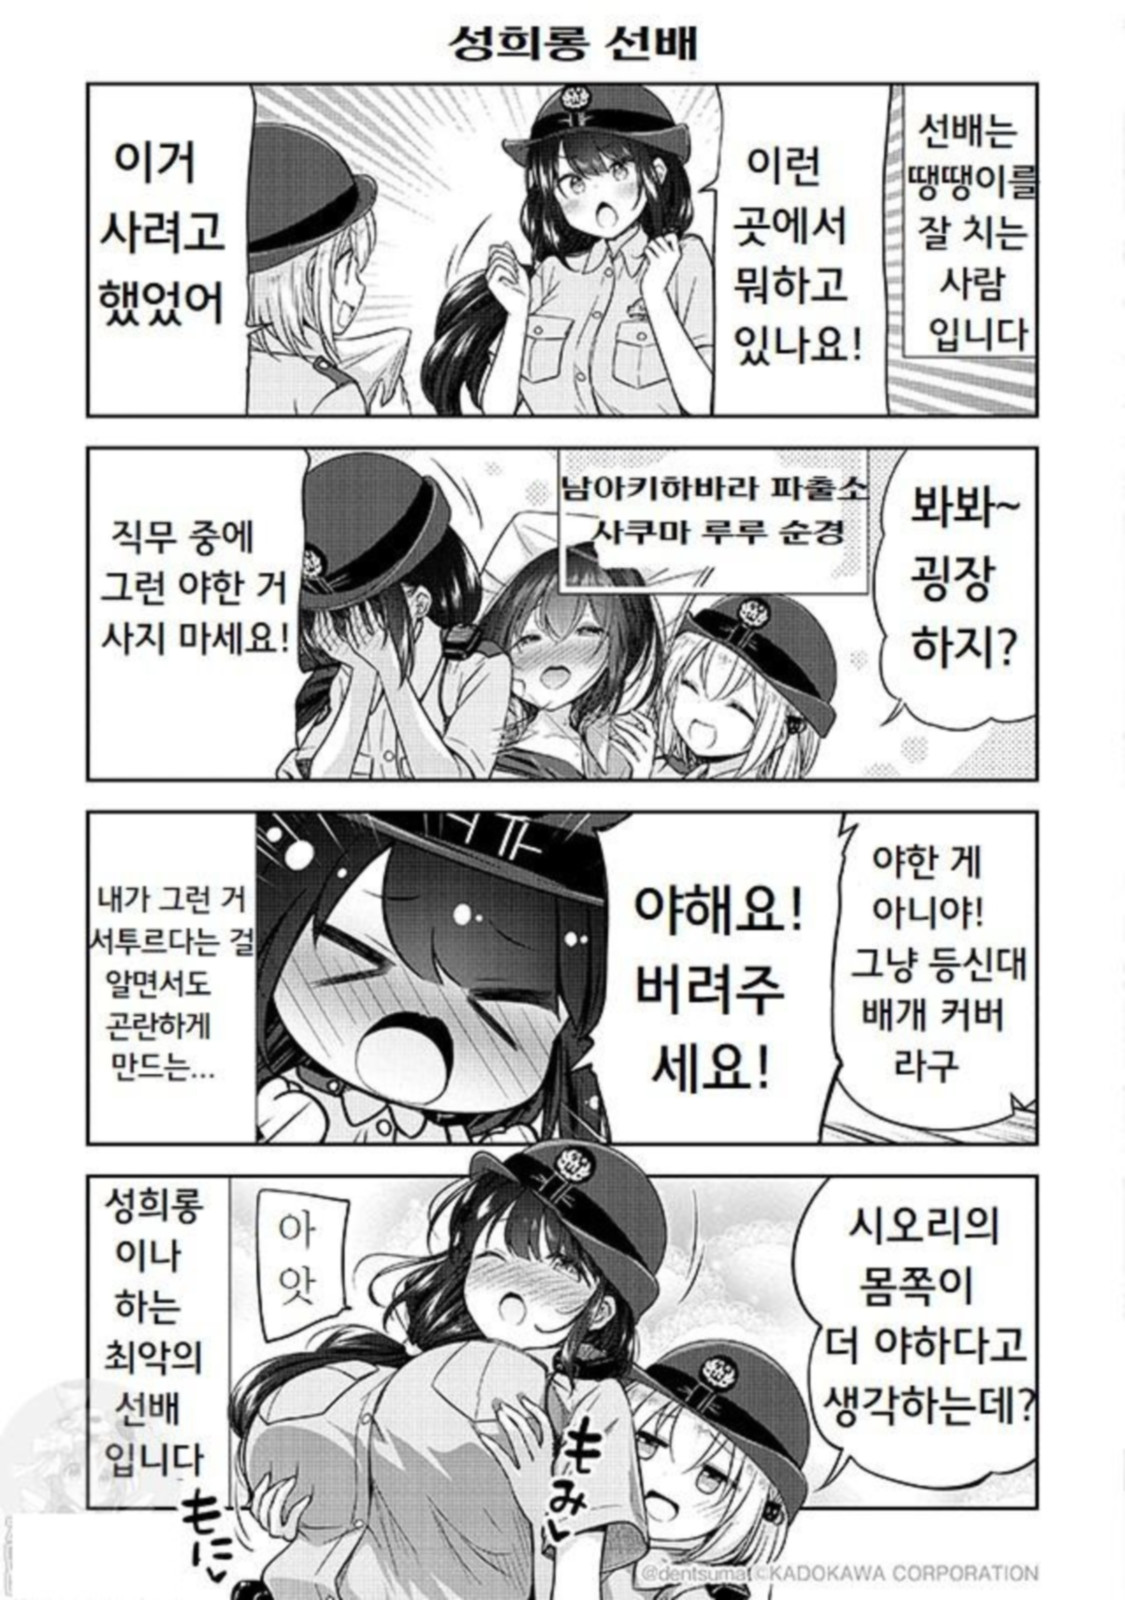 [번역] 사쿠마 순경과 하나오카 순경은 사귀기 시작했다 1-3